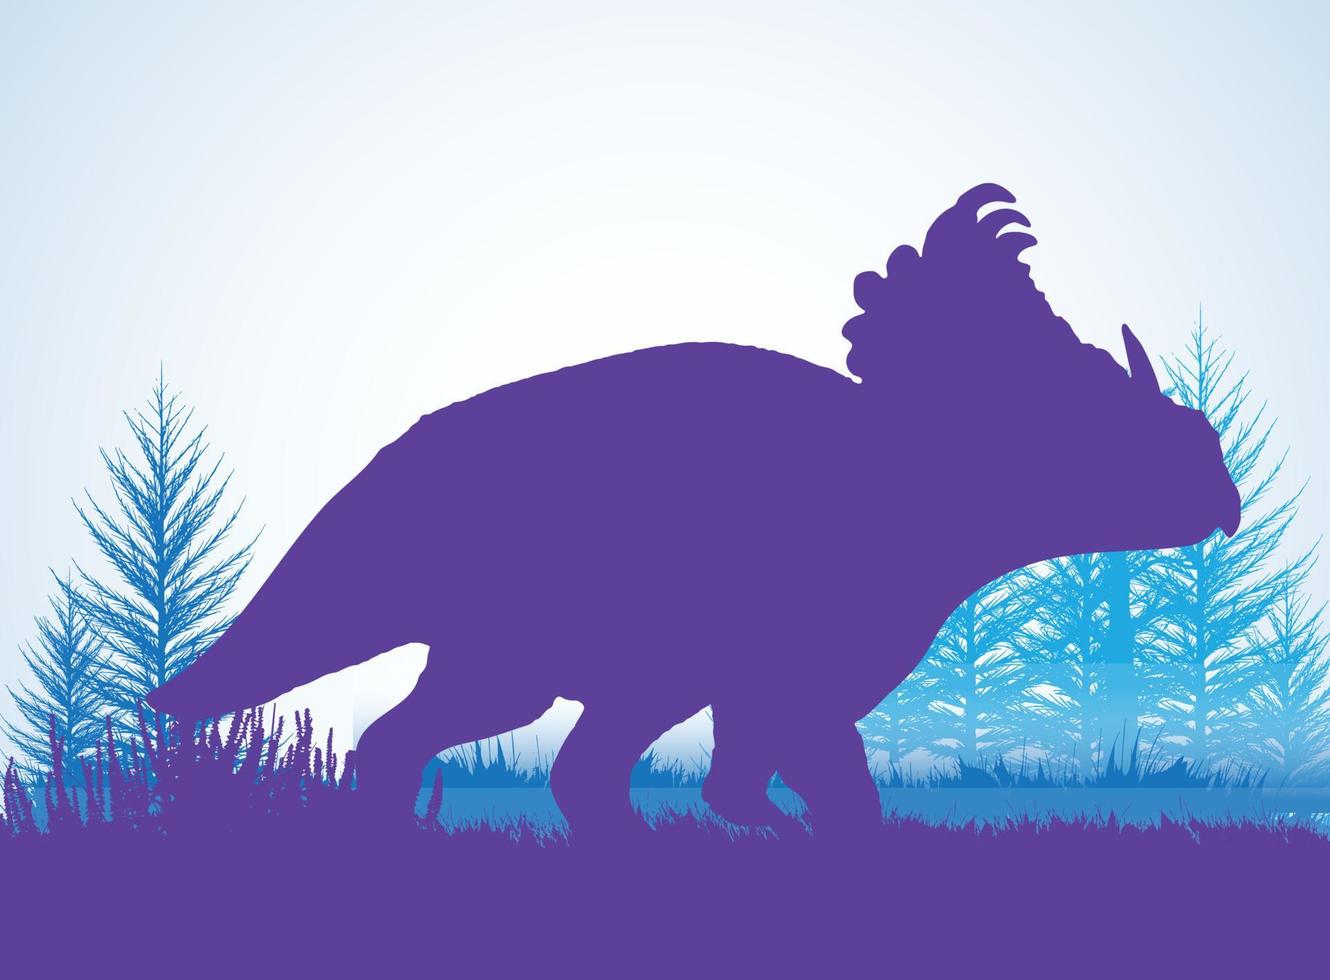 siluetas de dinosaurios sinoceratops en un entorno prehistórico capas superpuestas fondo decorativo banner ilustración vectorial abstracta vector